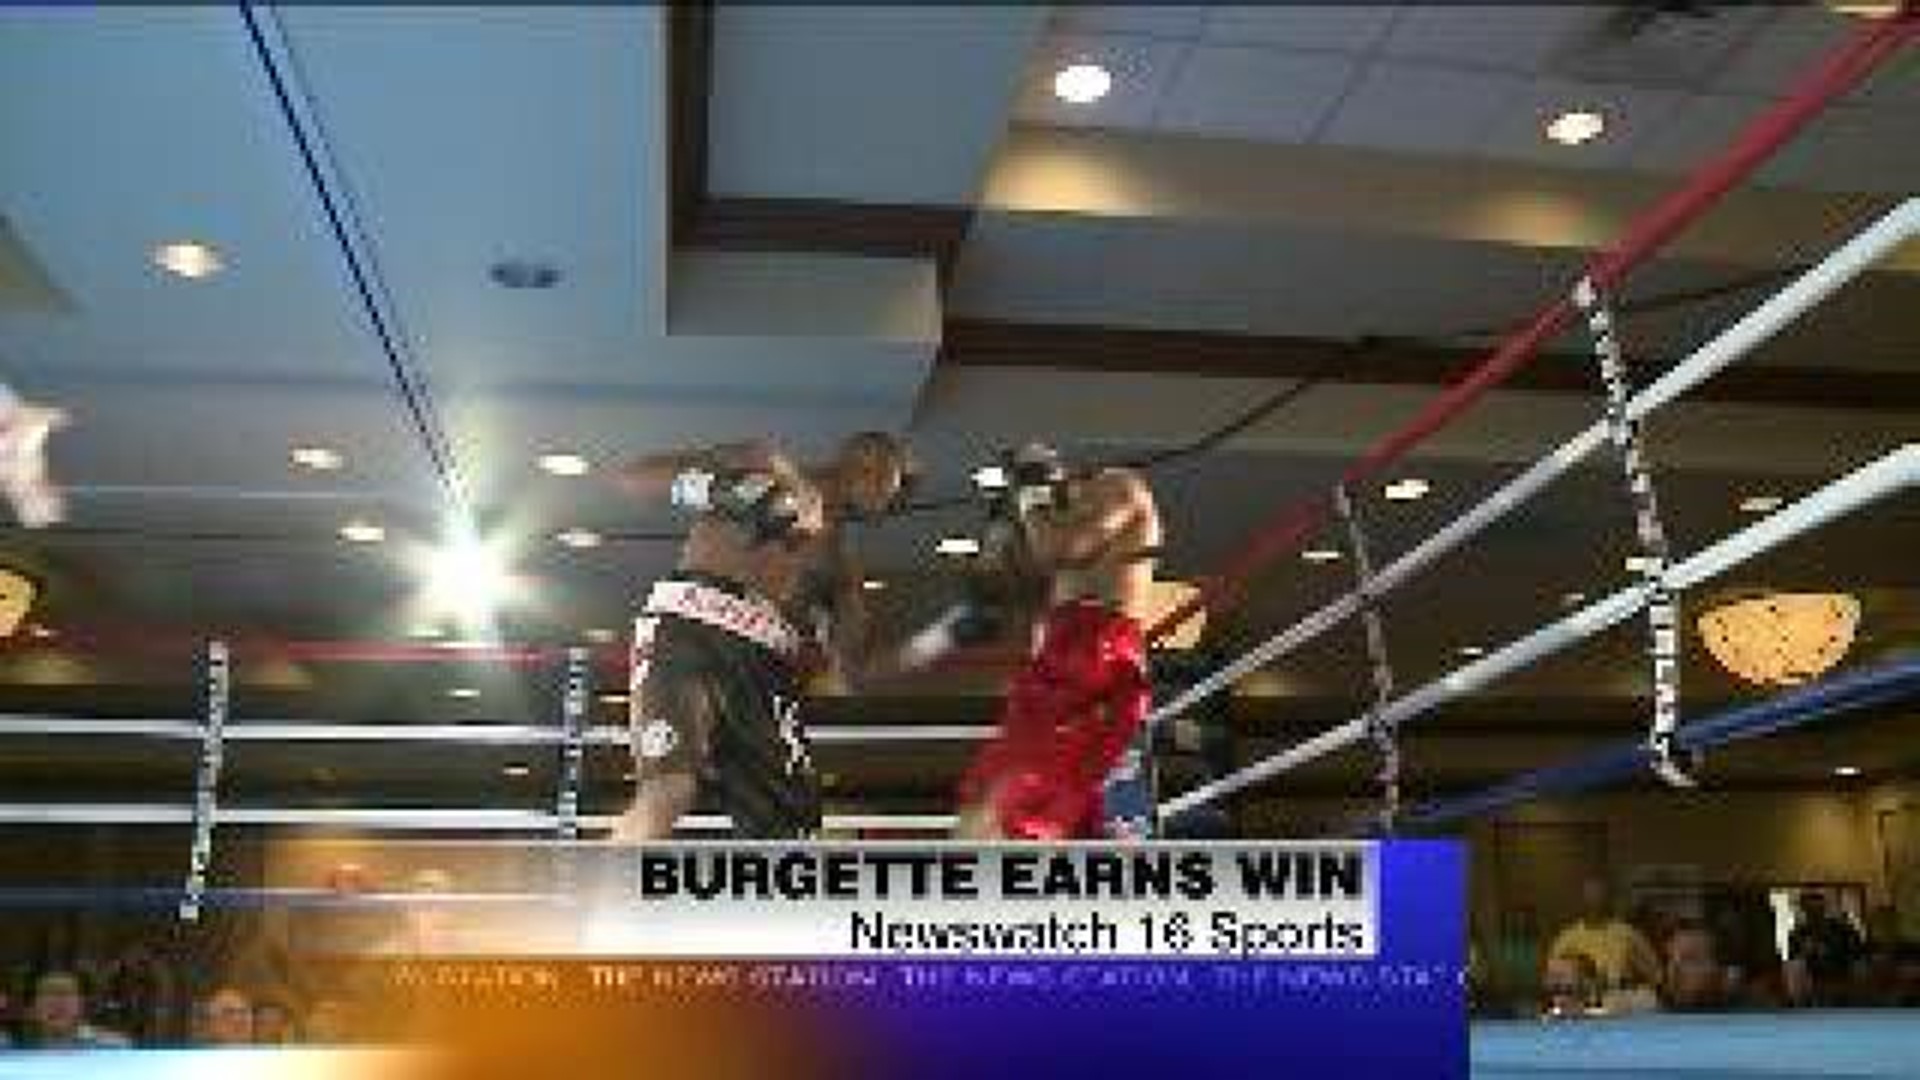 Burgette earns win